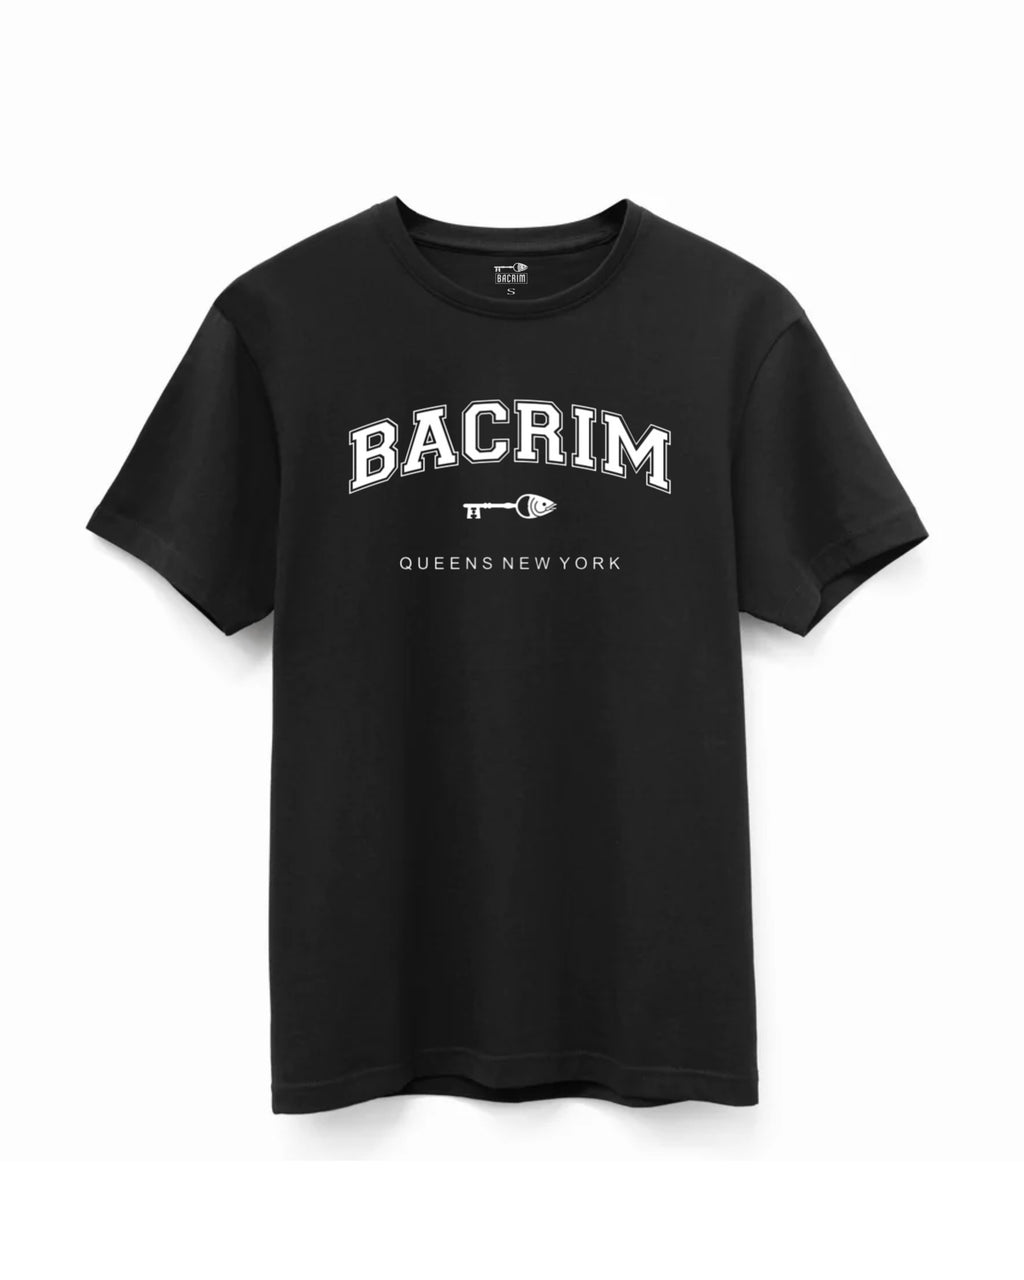 Bacrim University Tee